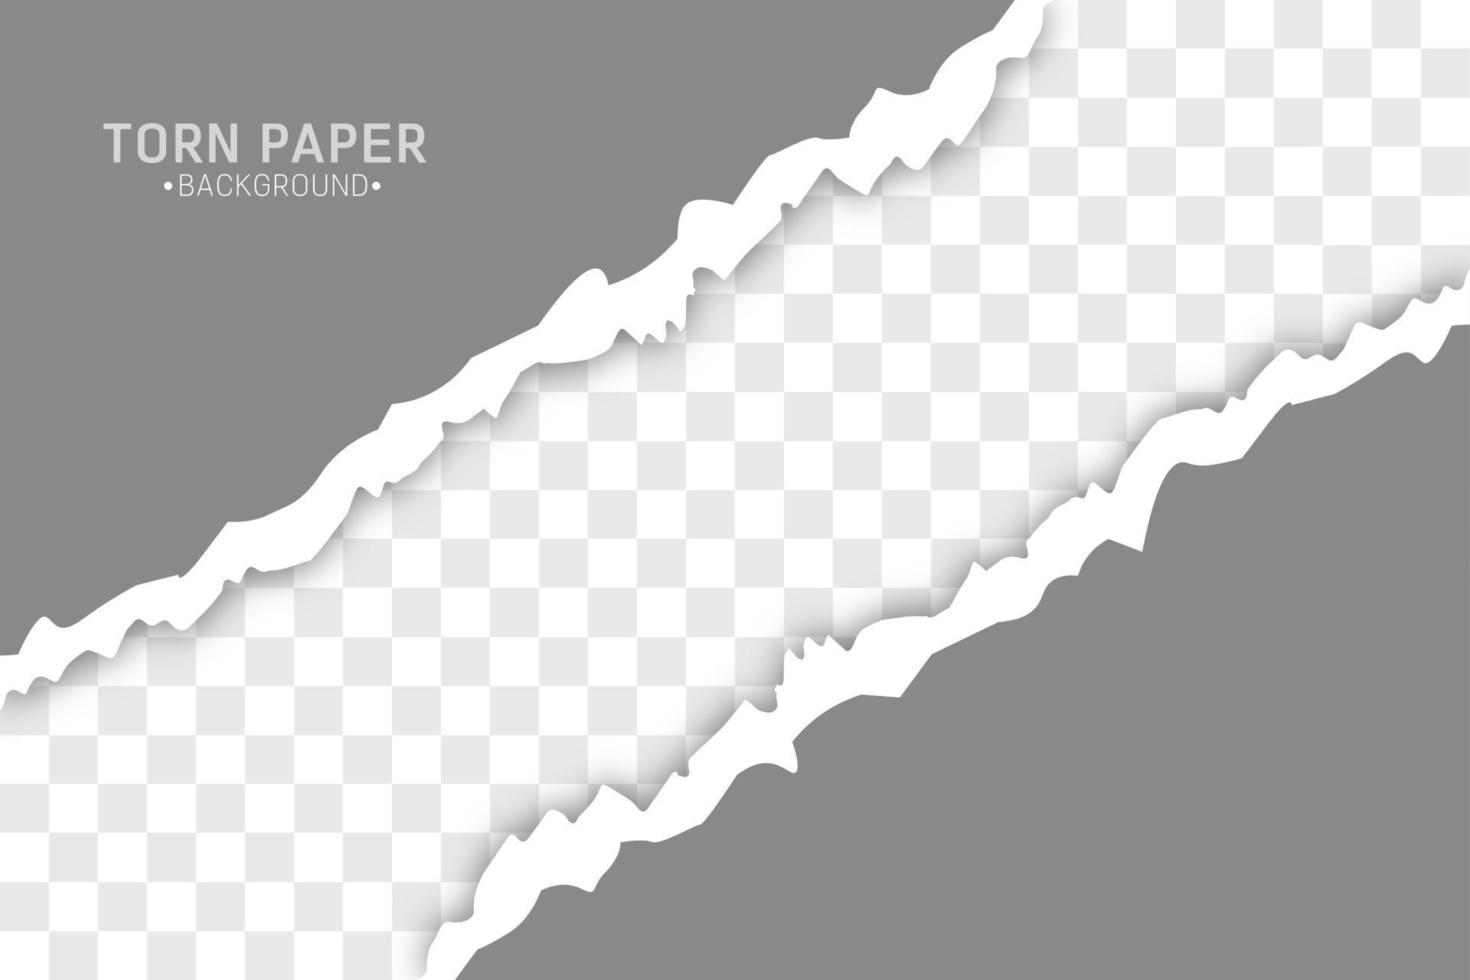 zerrissene Papierkanten-Vektorillustration. Stück zerrissenes graues horizontales Papier mit weichem Schatten auf weißem, quadratischem Hintergrund. vektor